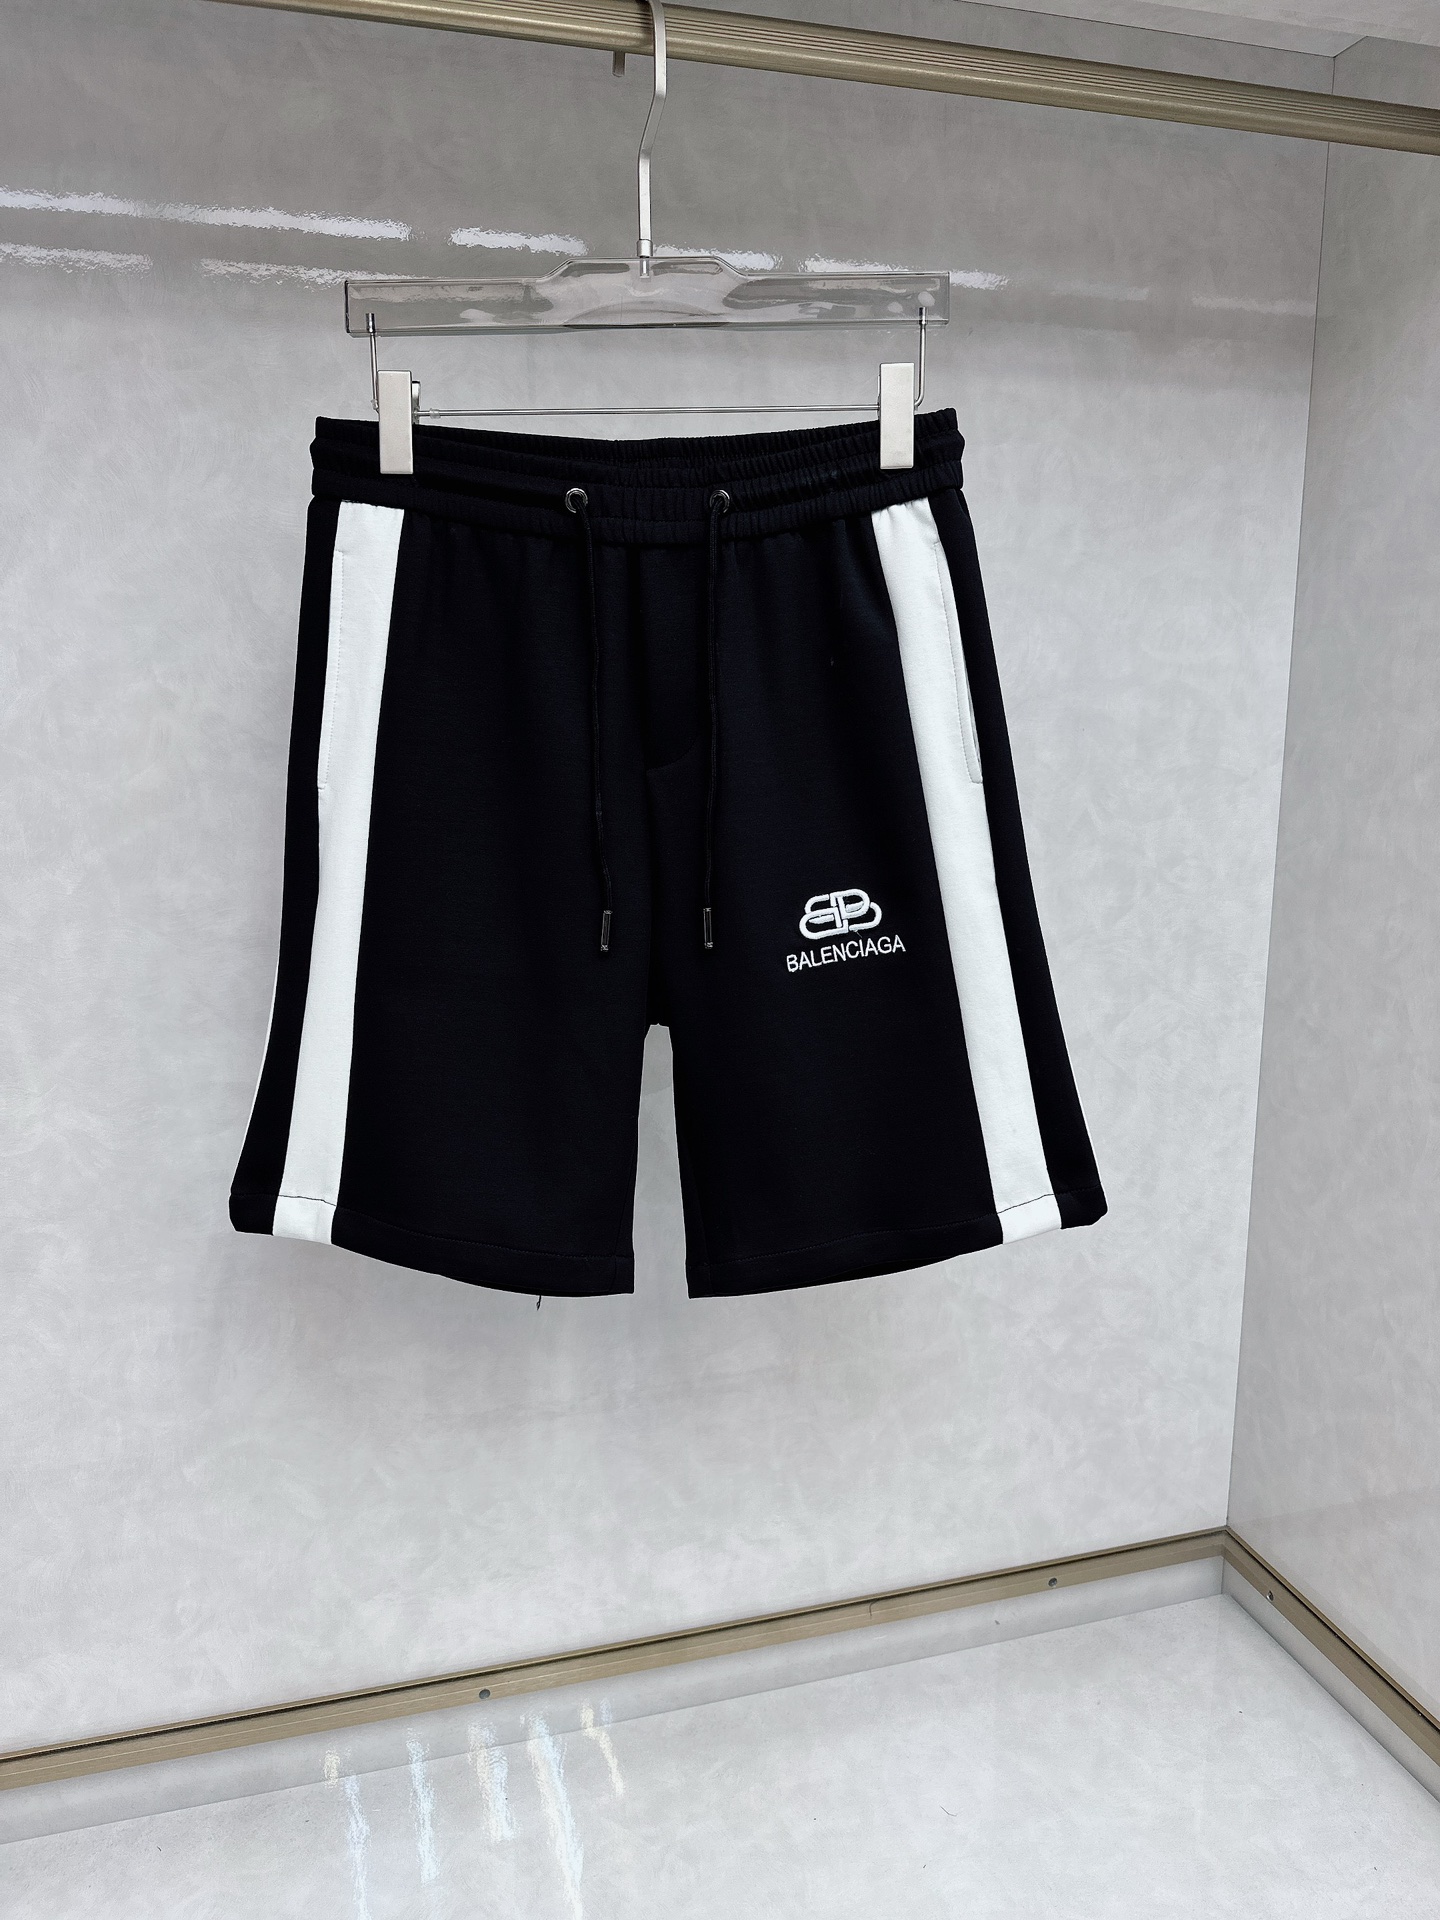 Balenciaga New
 Clothing Shorts Men Summer Collection Casual